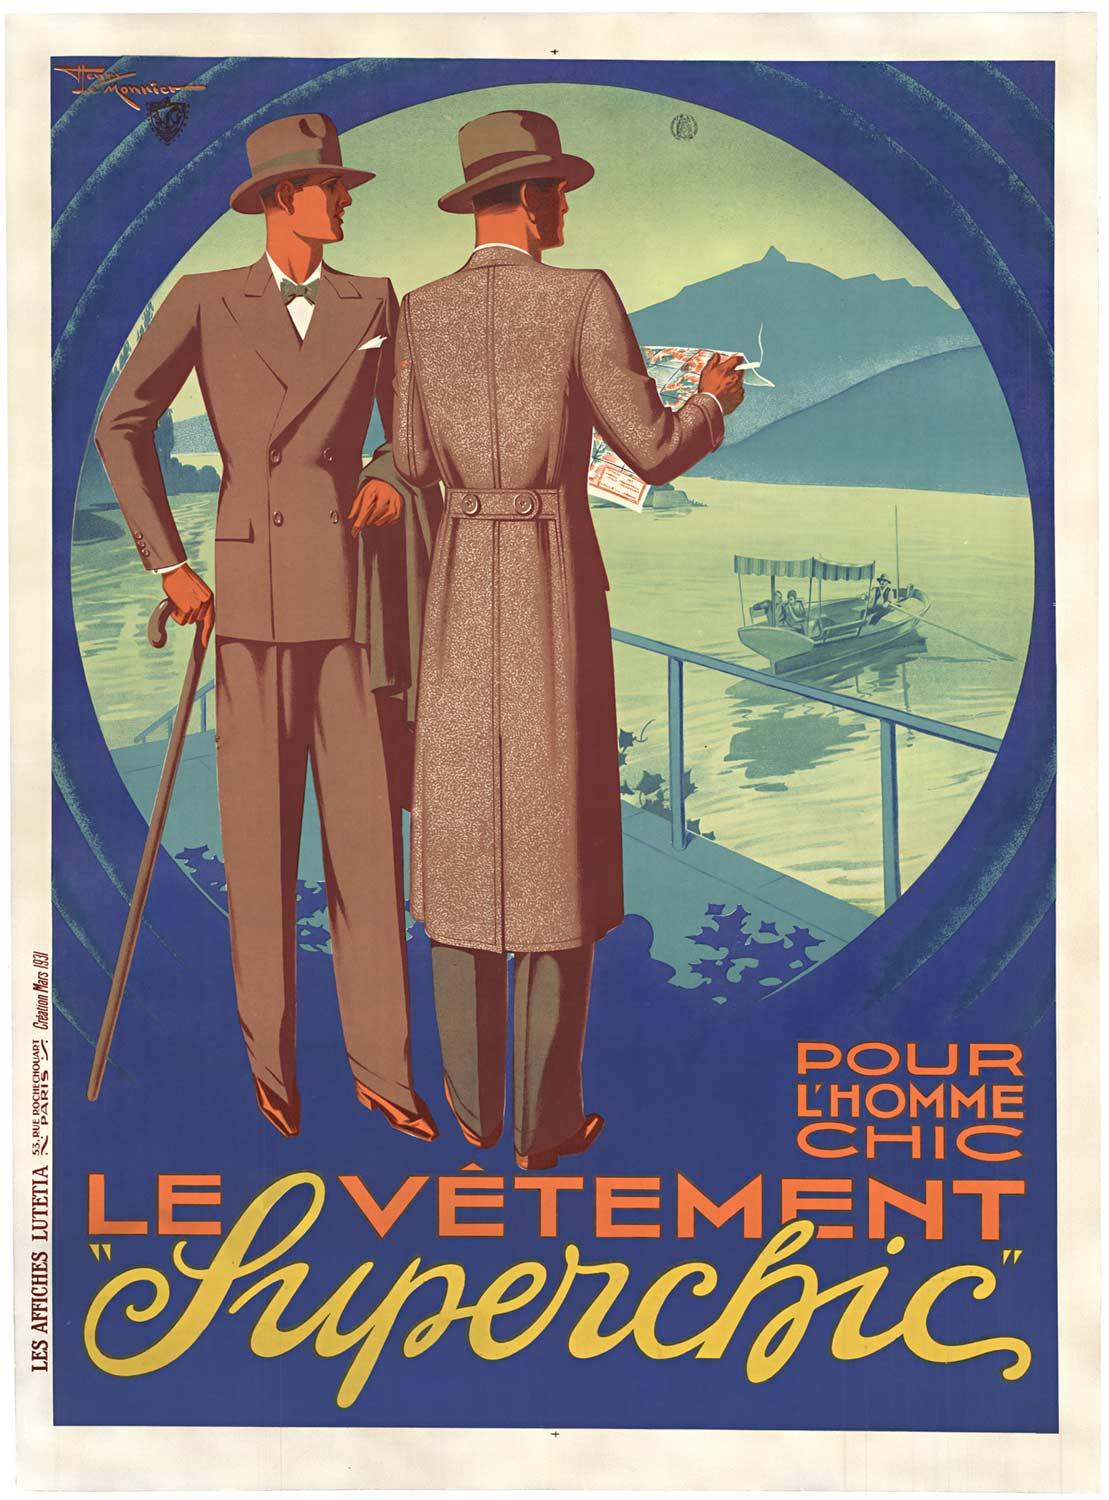 henry le monnier Landscape Print - Original Le Vetement "Superchic" pour L'Homme vintage French poster